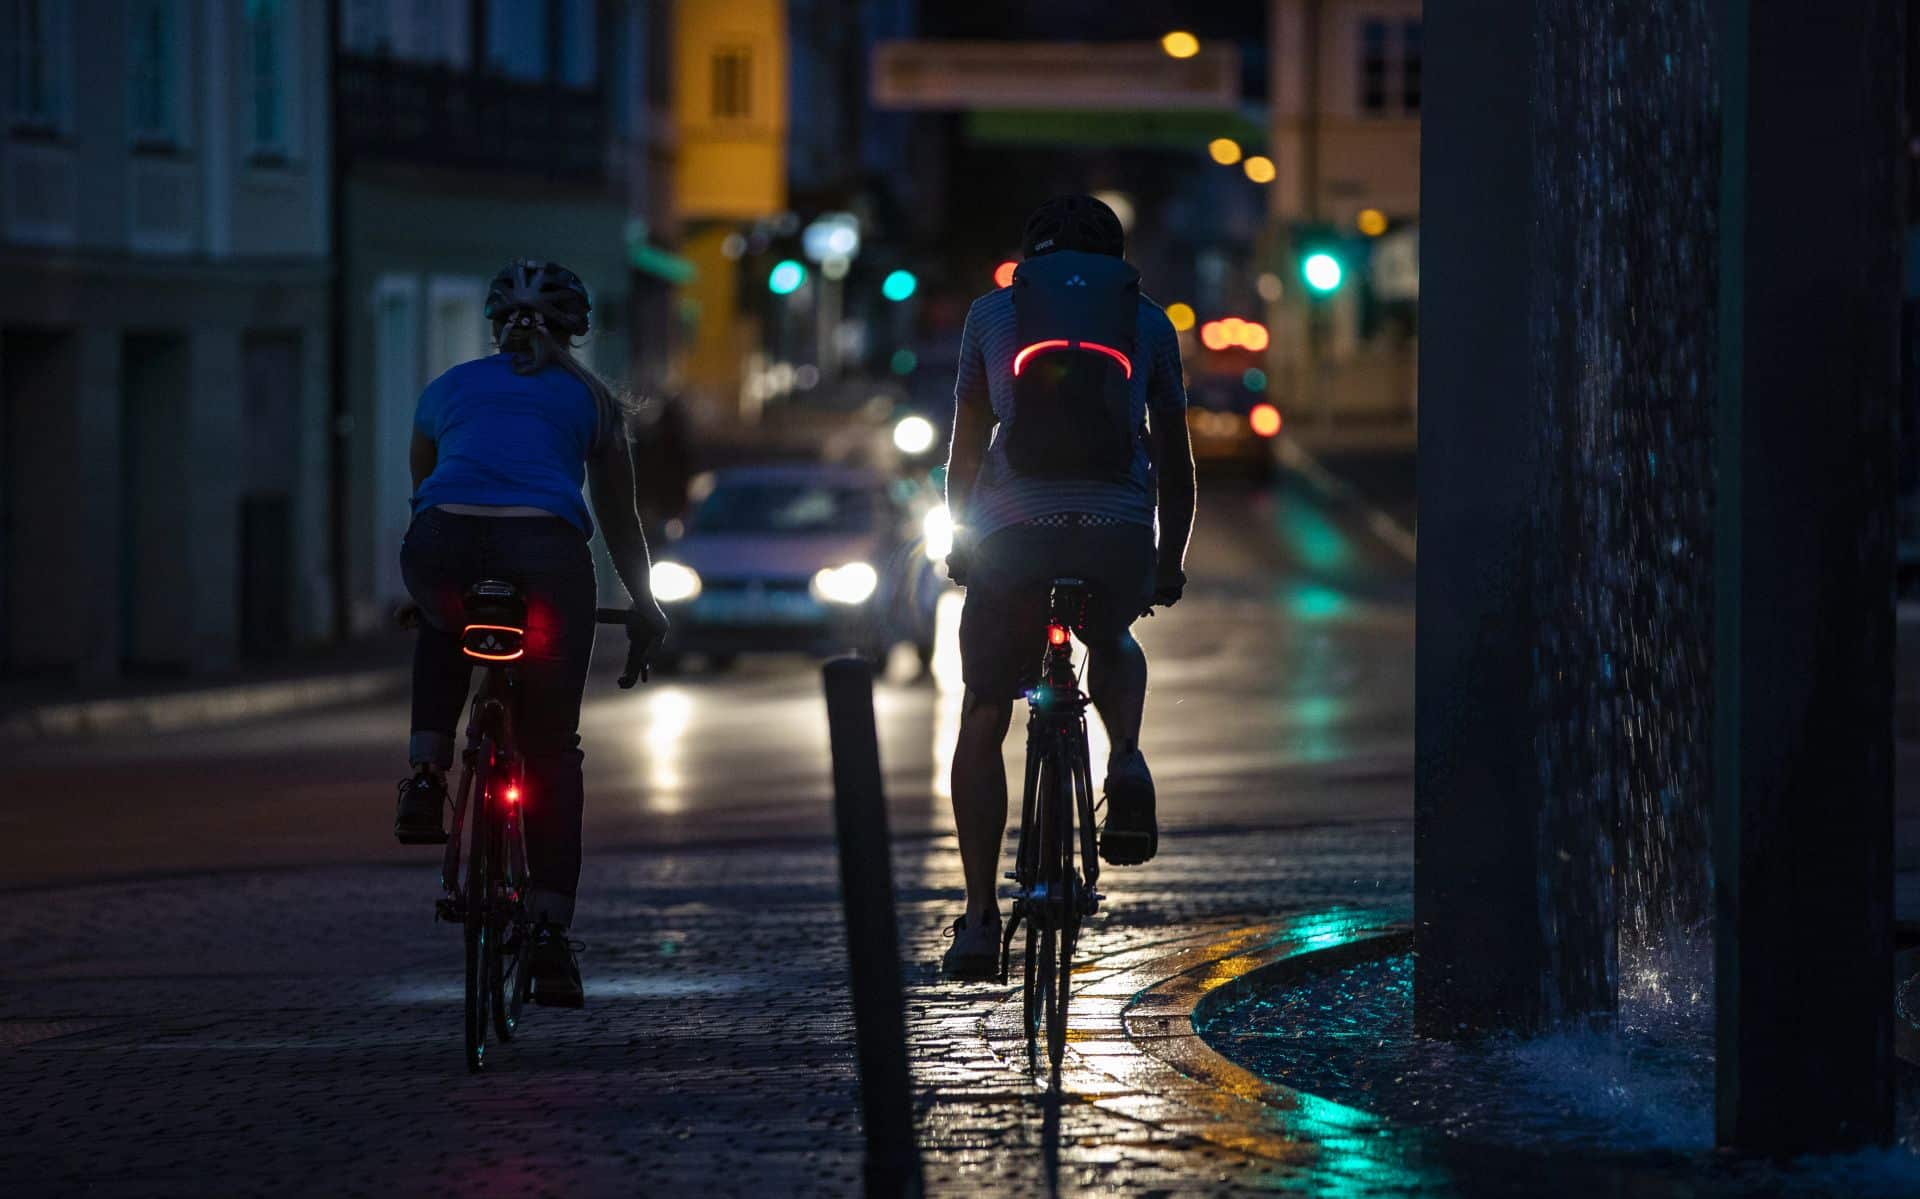 Fahrradlicht: Lohnt sich eine LED-Fahrradbeleuchtung?